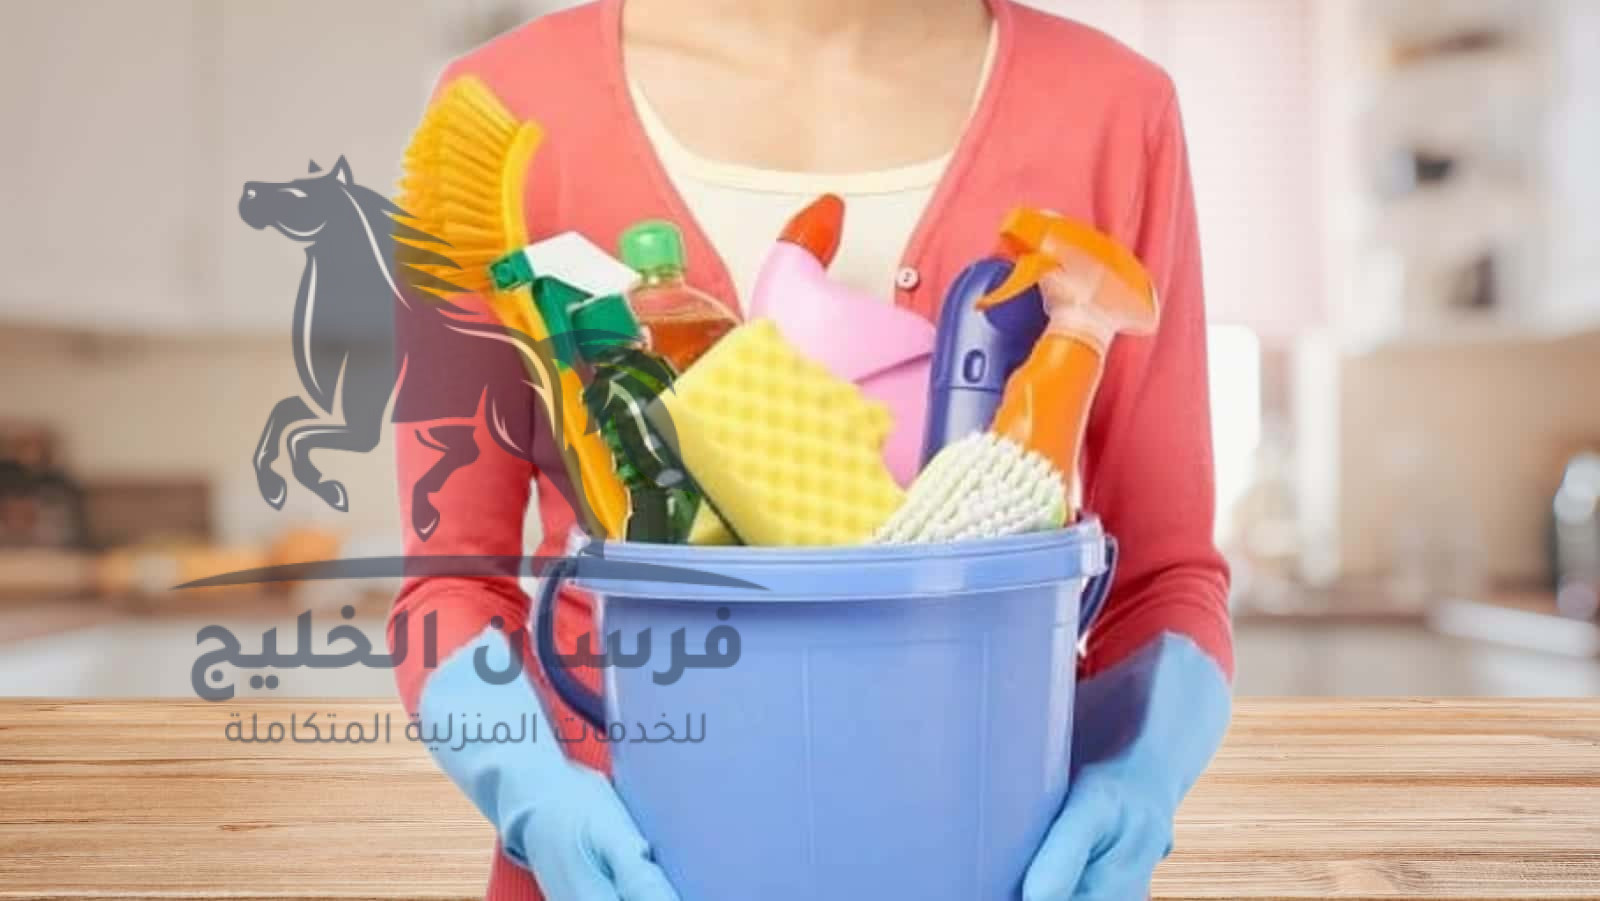 رقم شركة تنظيف المنازل دبي